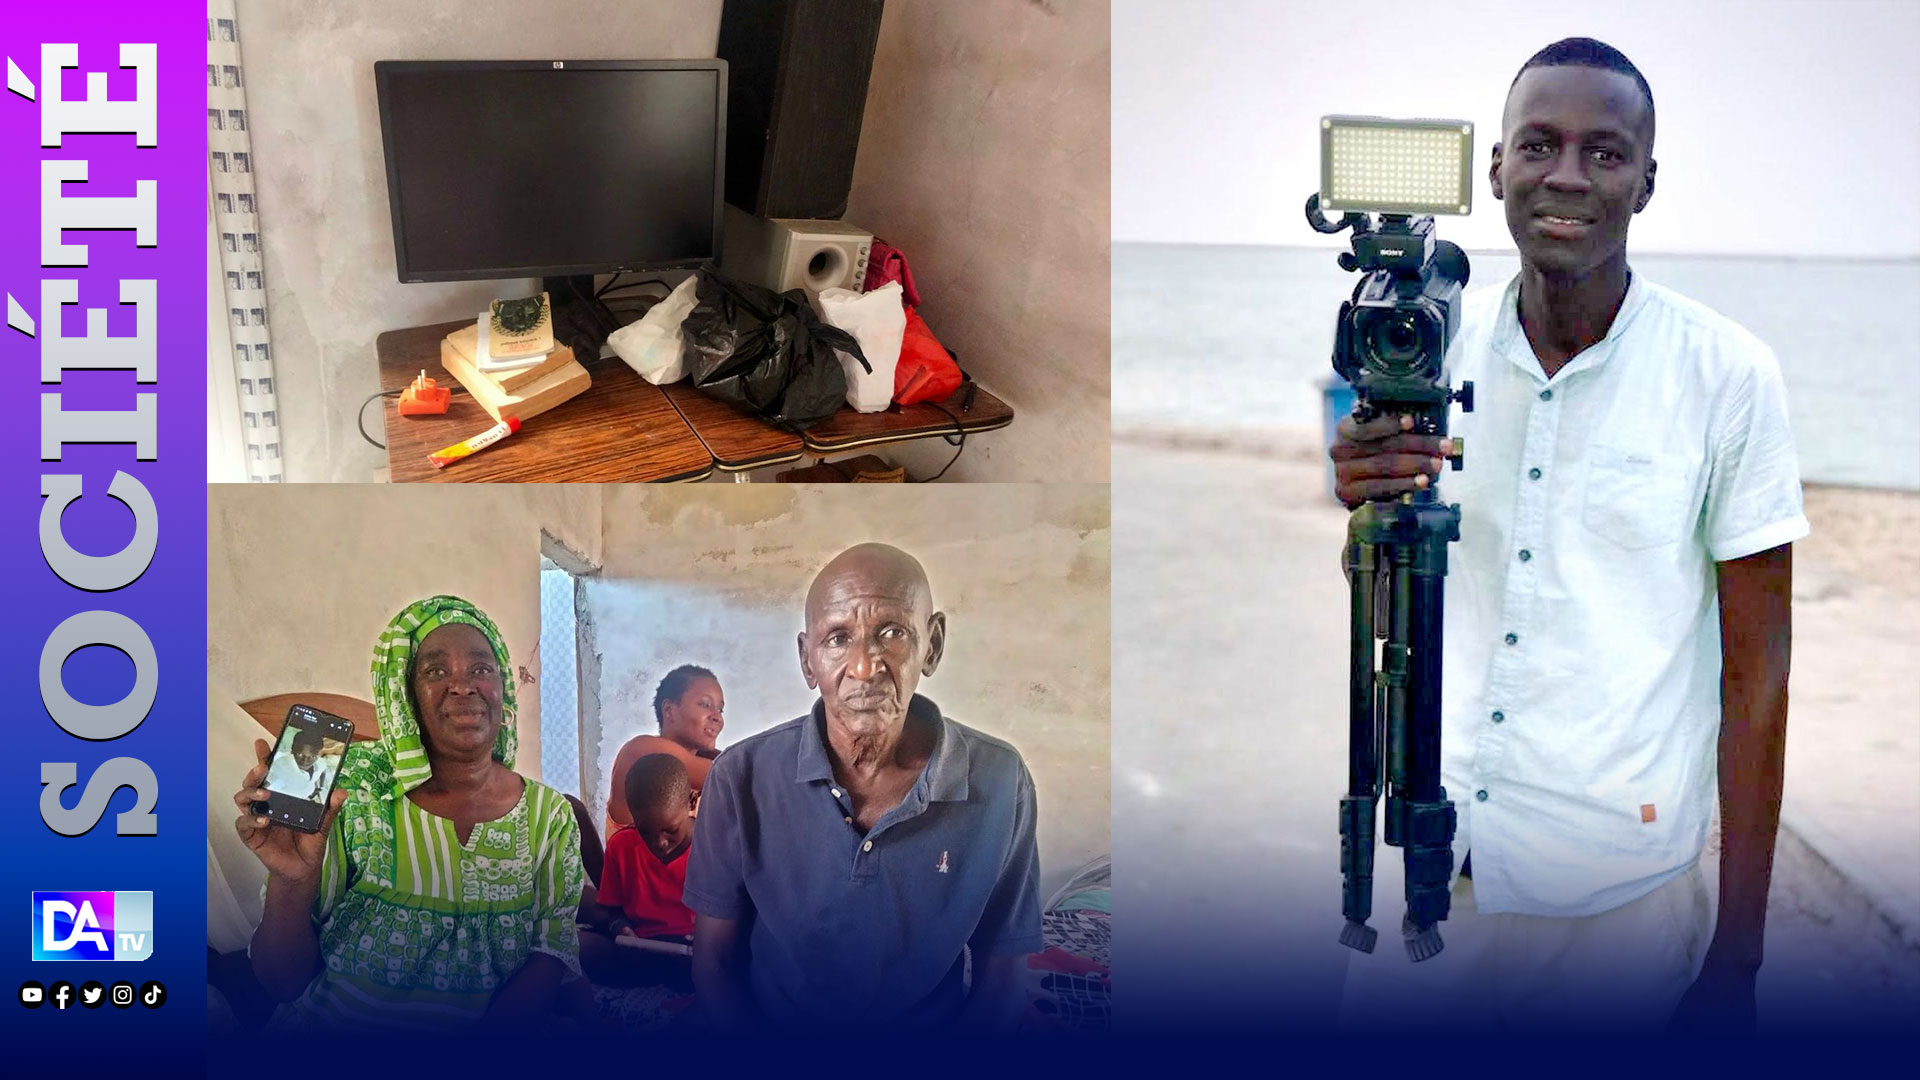 Îles Canaries: L'histoire d'un jeune cinéaste sénégalais qui a péri en mer avec son projet de film sur l'émigration irrégulière